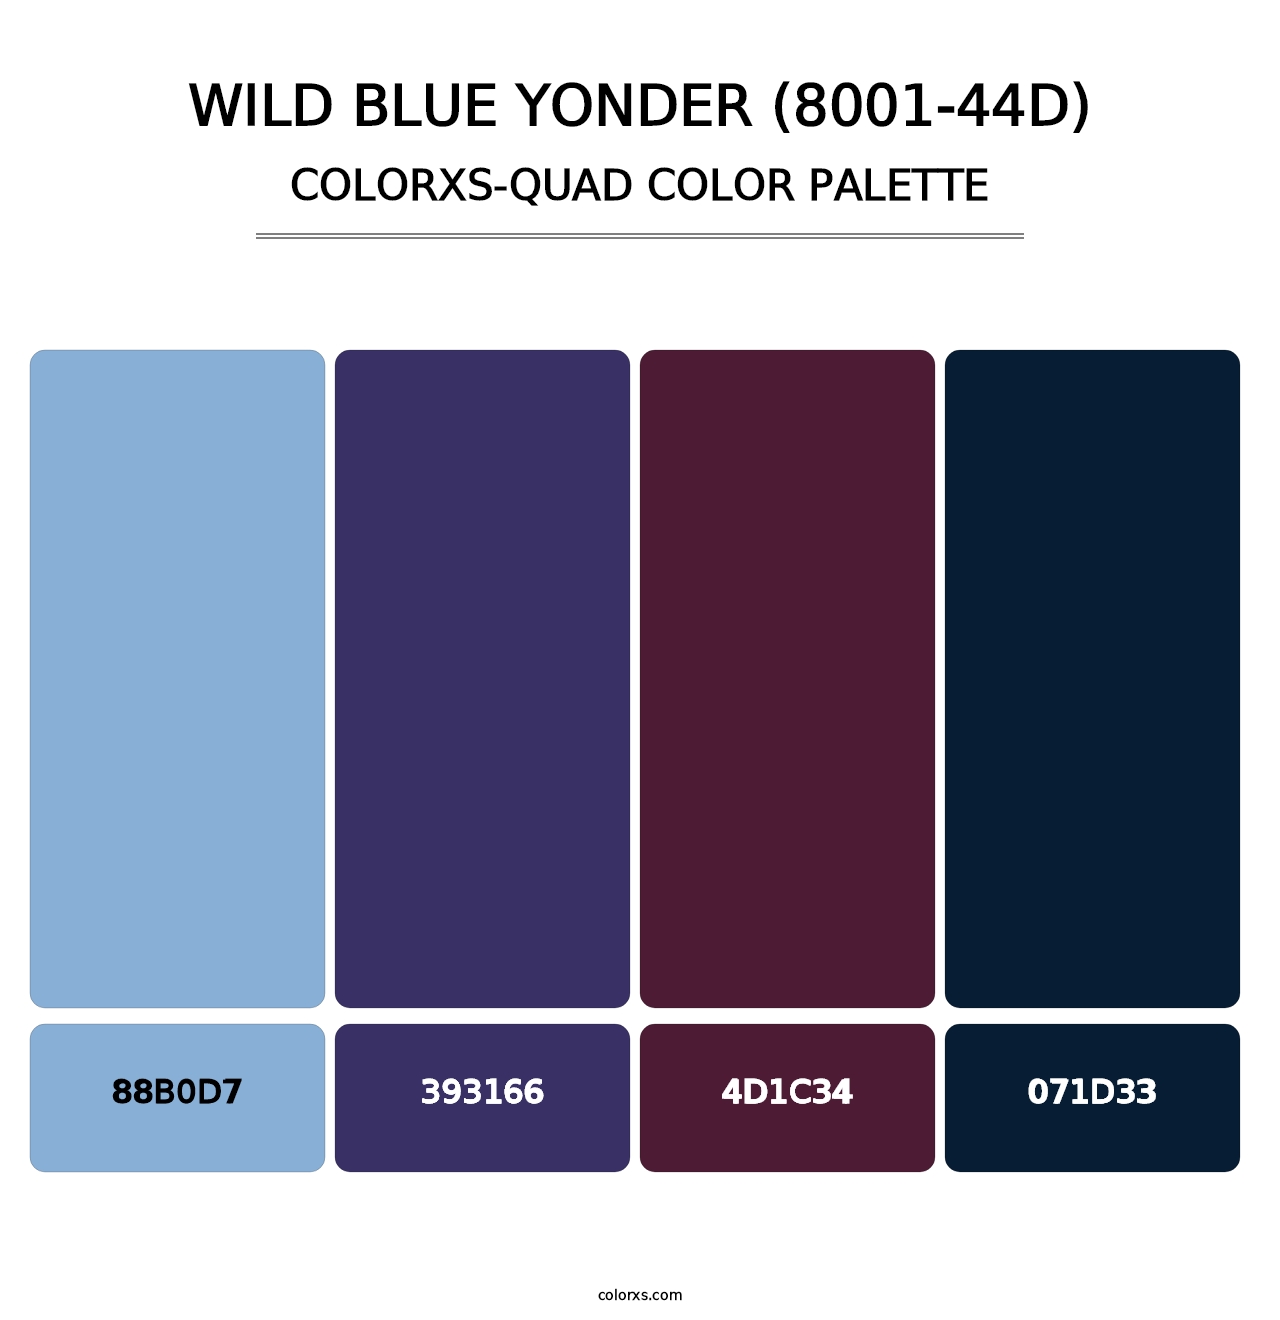 Wild Blue Yonder (8001-44D) - Colorxs Quad Palette